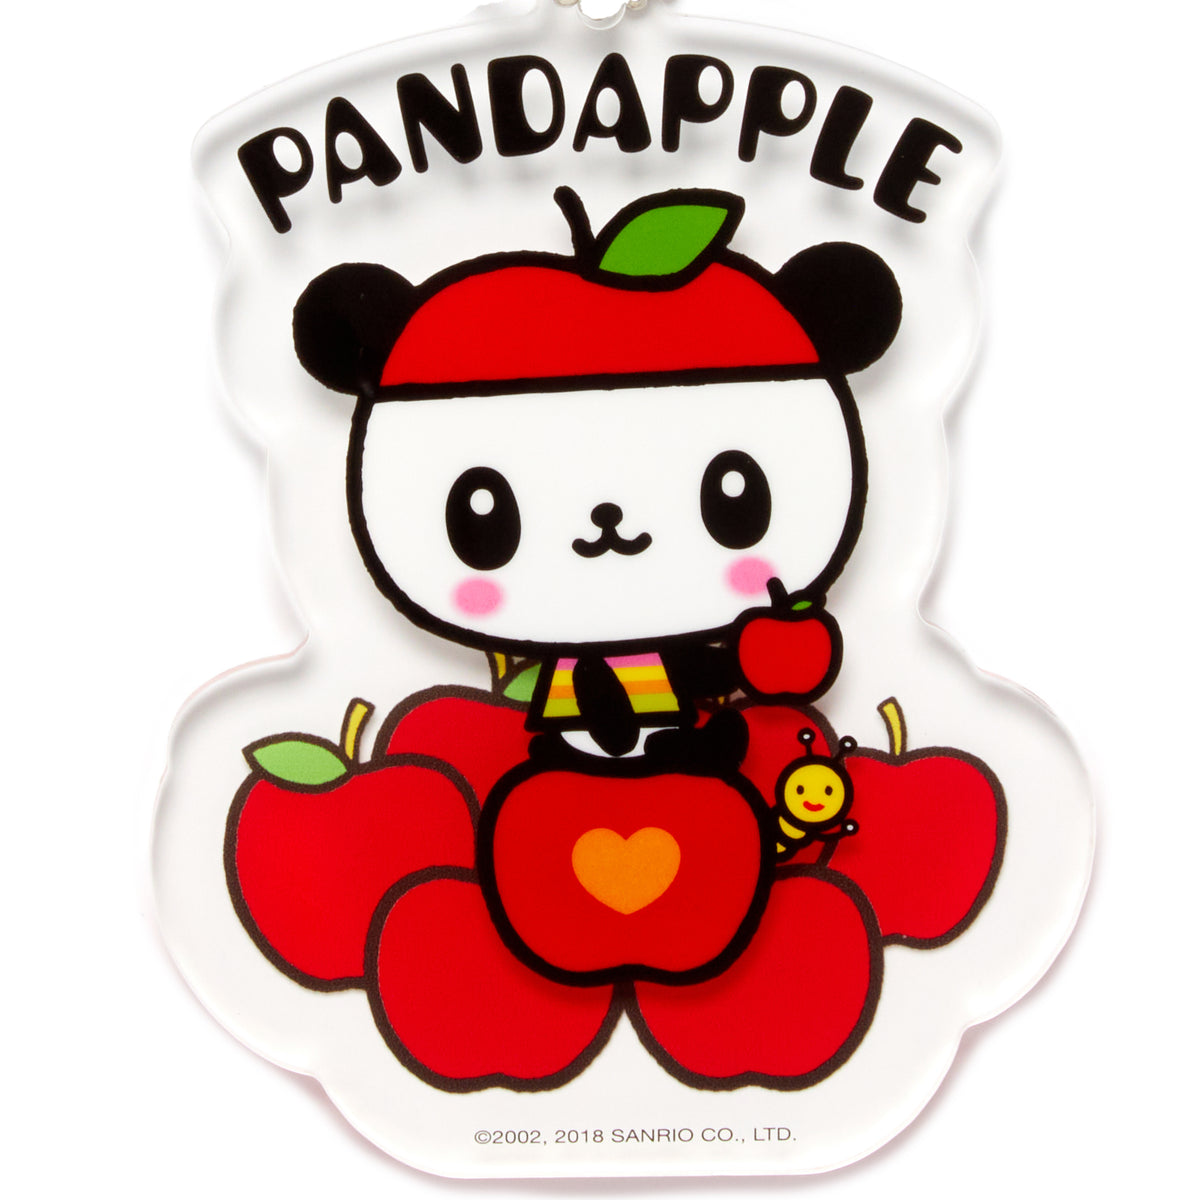 Pandapple Acrylic Keychain Trinket HUNET GLOBAL CREATIONS INC   